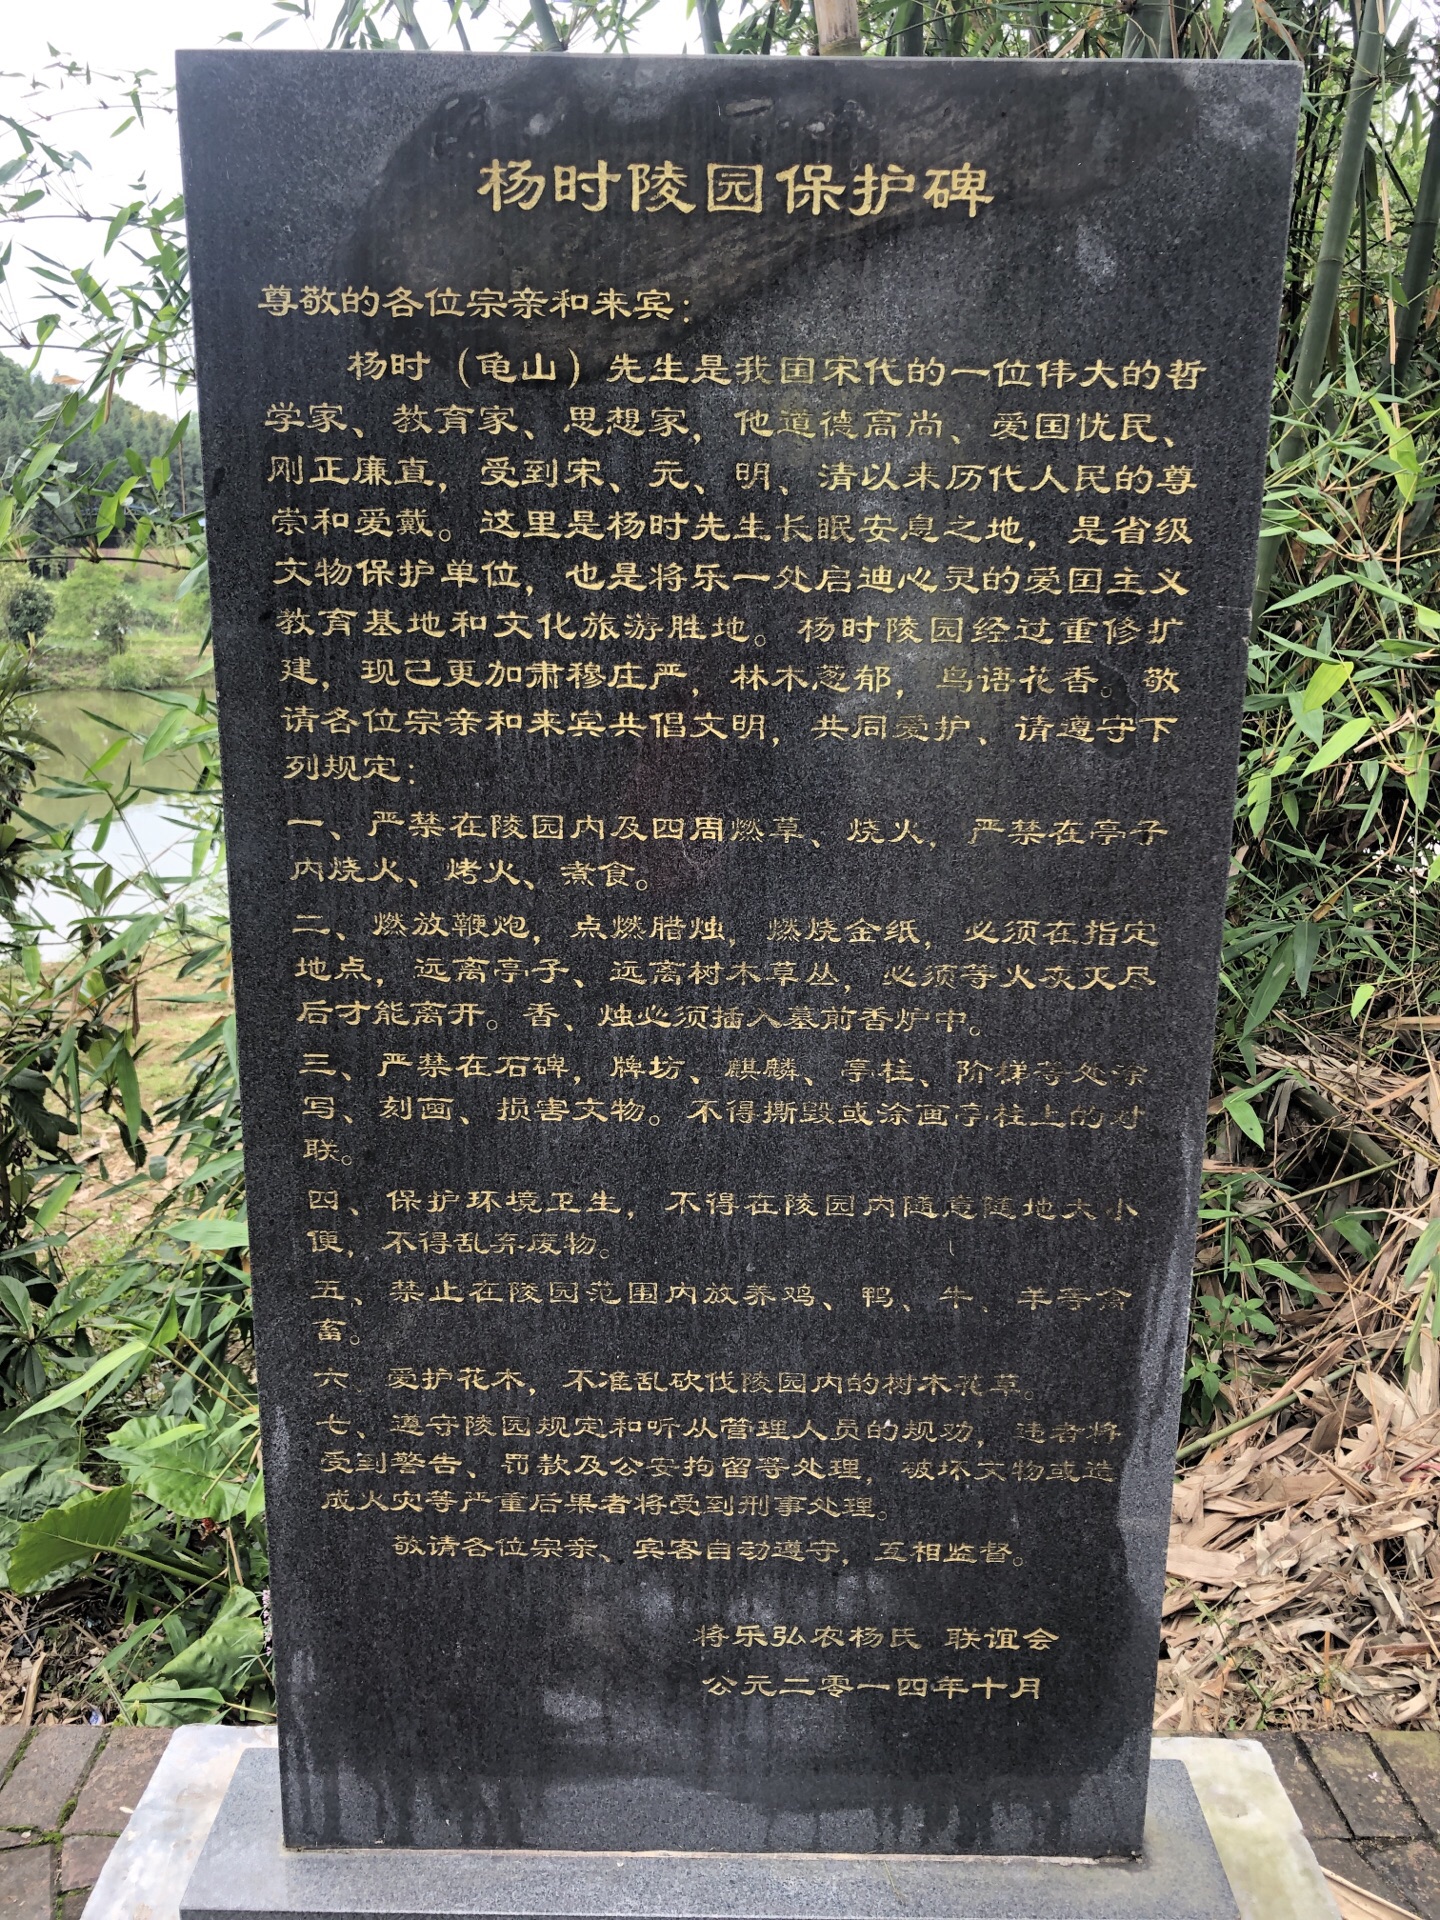 【携程攻略】三明杨时墓景点,徒步路线:从将乐城区沿着滨河南路靠着河